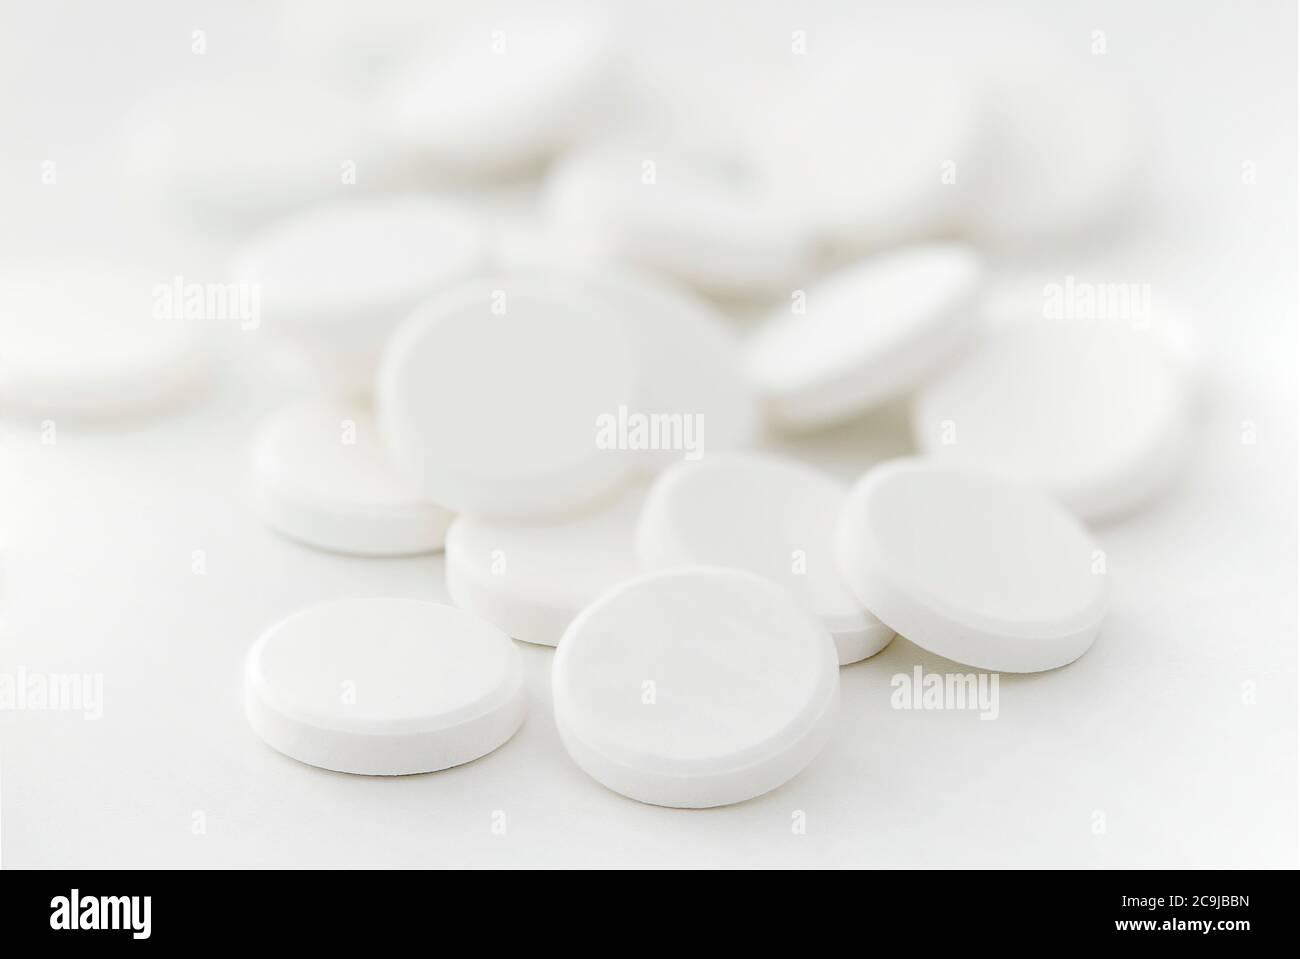 Bayer Phillips Lait de magnésie liquide, 350 ml : : Santé et Soins  personnels